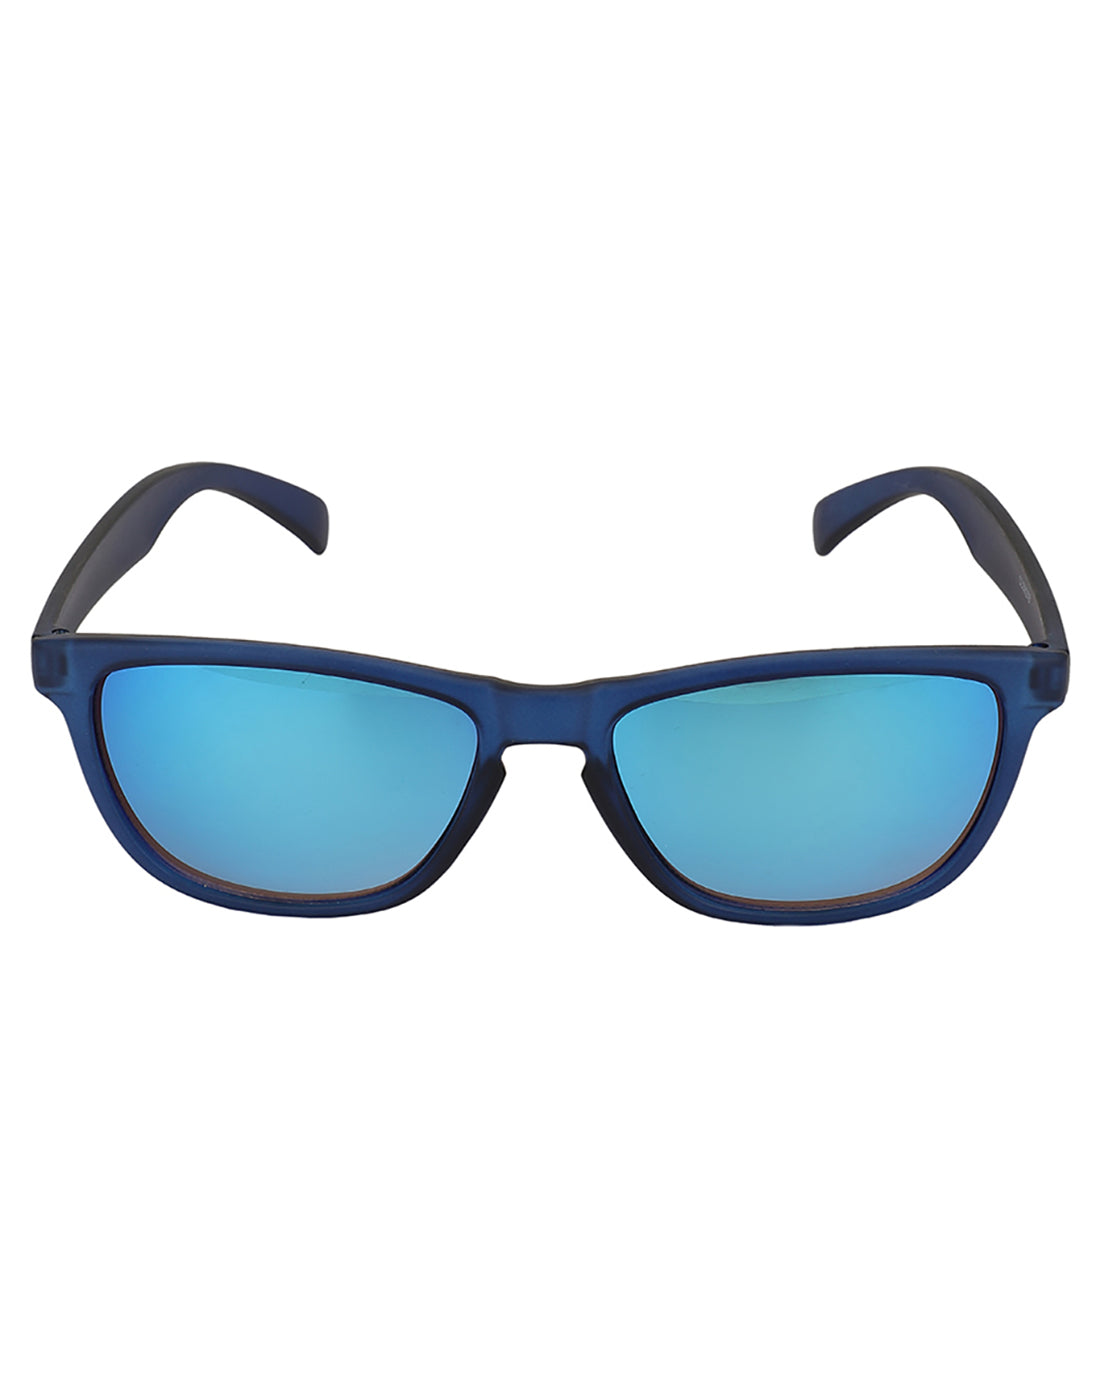 Premium Blue Toned Uv Protected Lens Wayferer Sunglass For Men